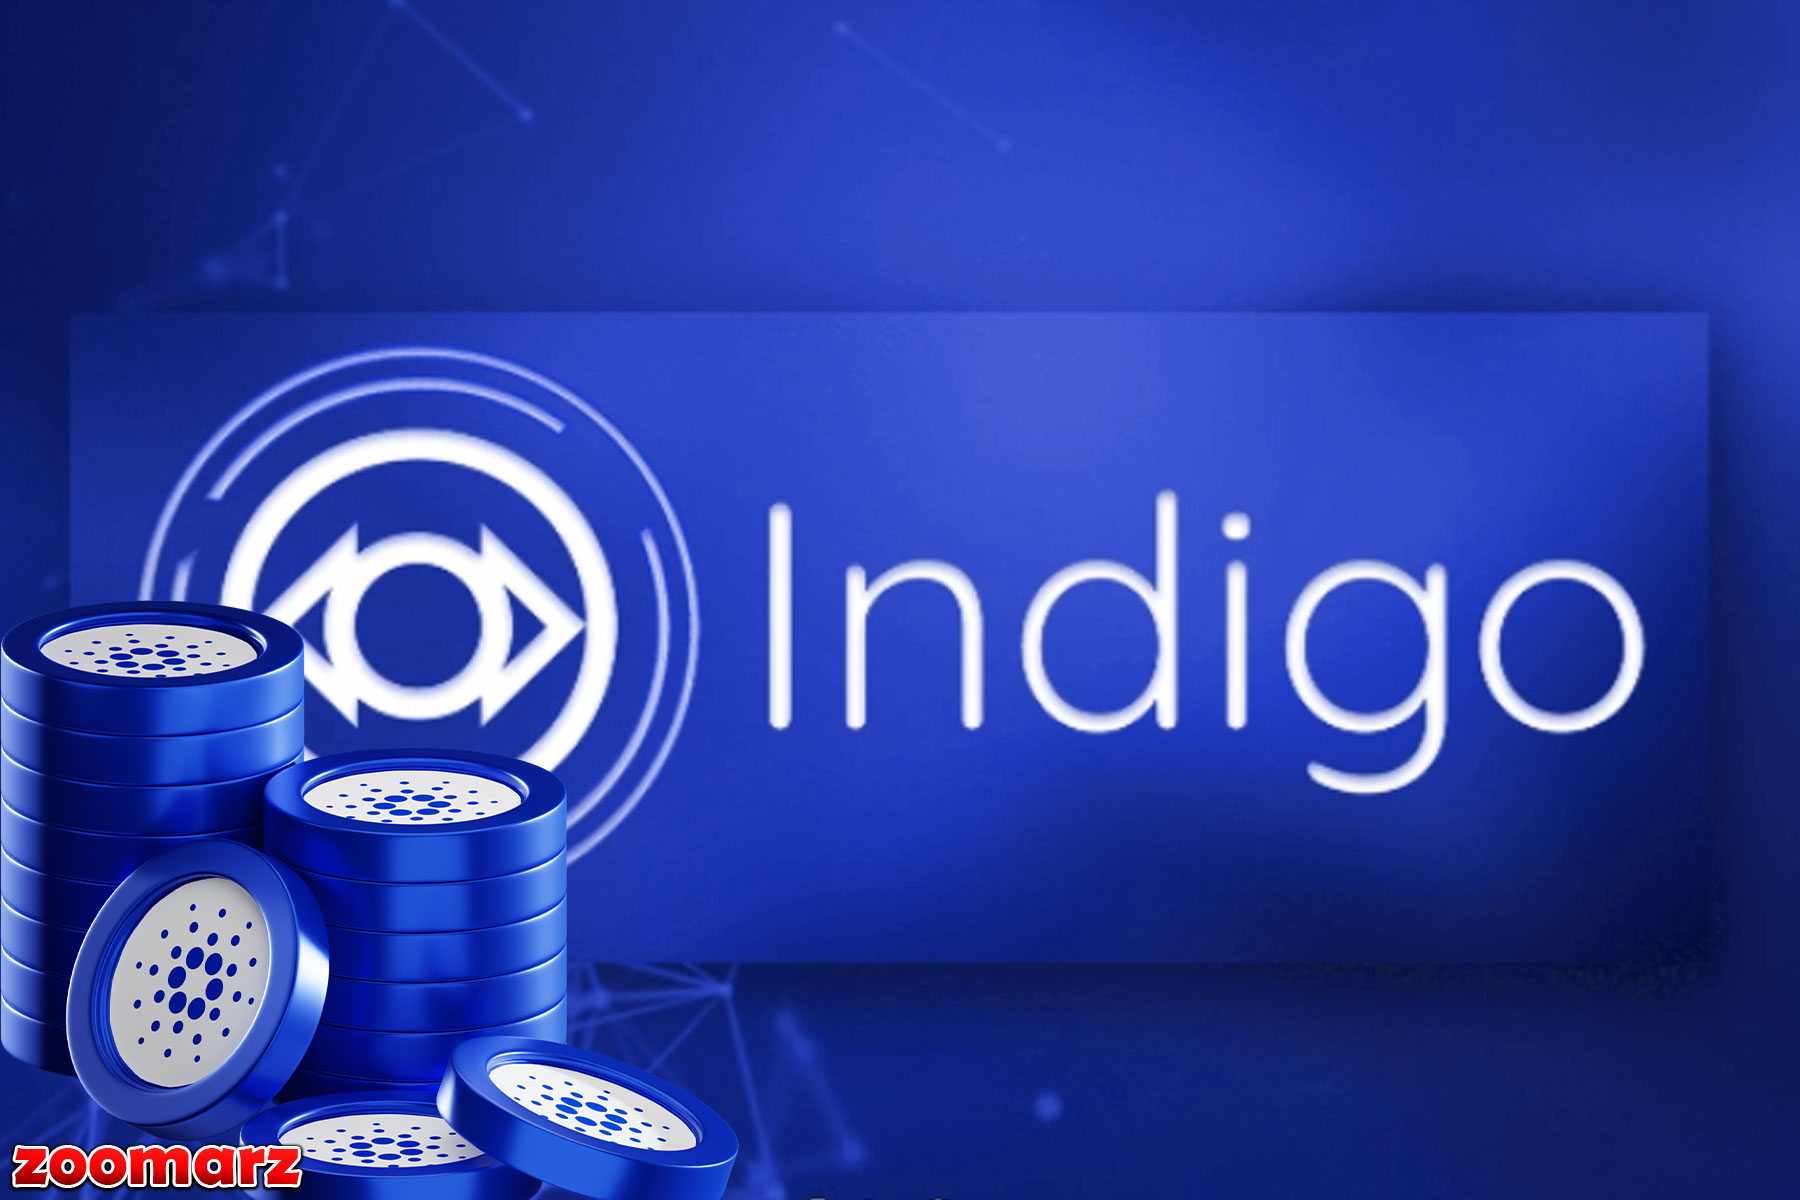 پروتکل Indigo توان کاردانو را با قرارداد هوشمند بهینه می کند